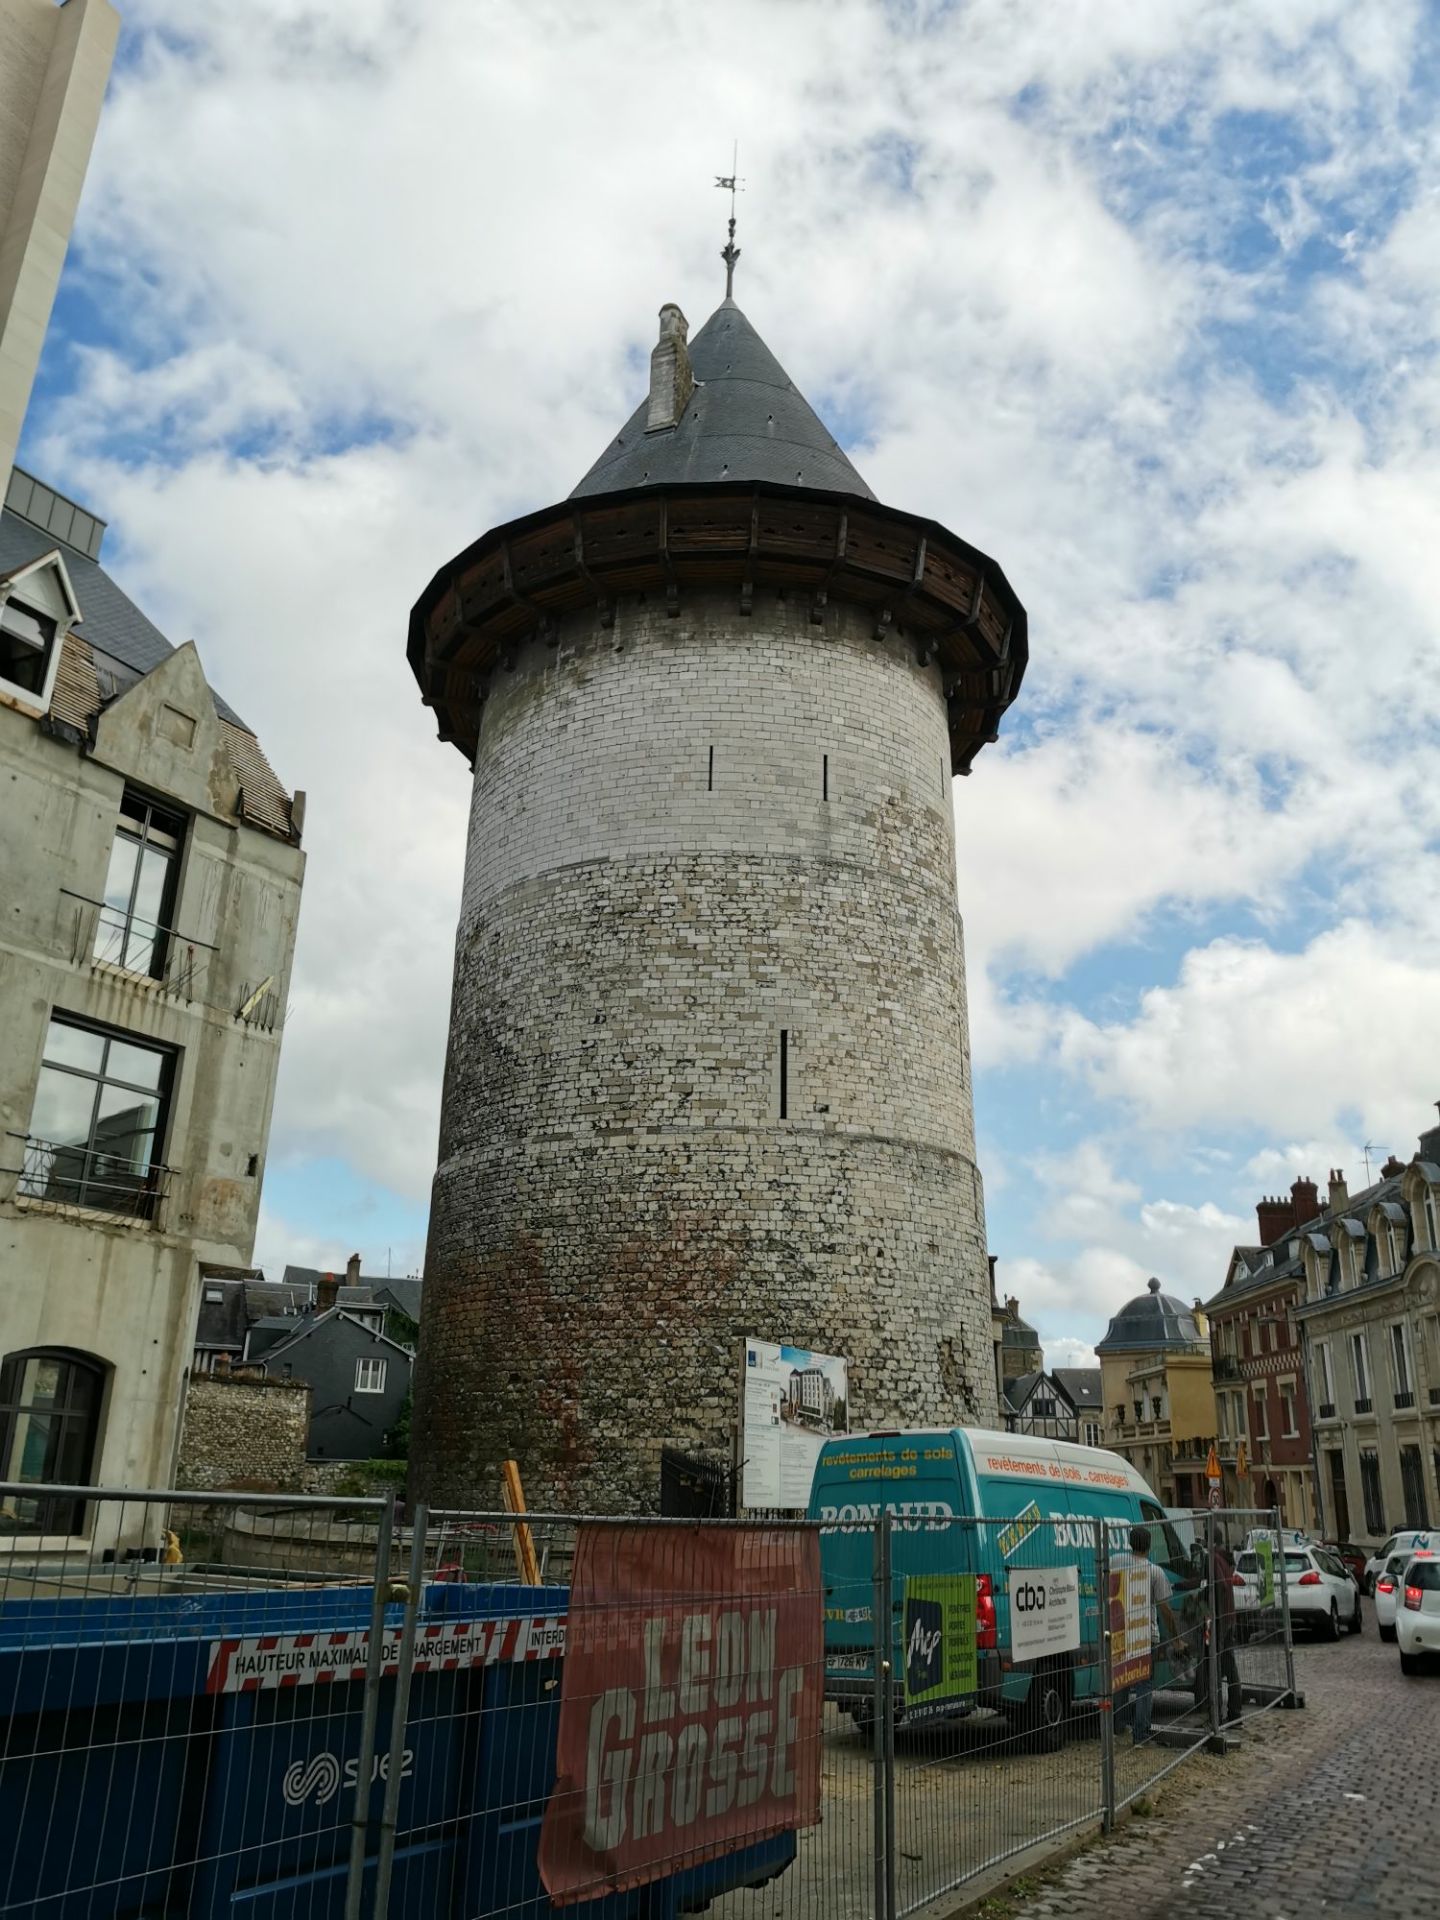 这是一座圆形的防御塔，或者说瞭望塔，位于鲁昂老城靠近北门的地方，塔身下半截是石块砌成的圆形，塔身已经